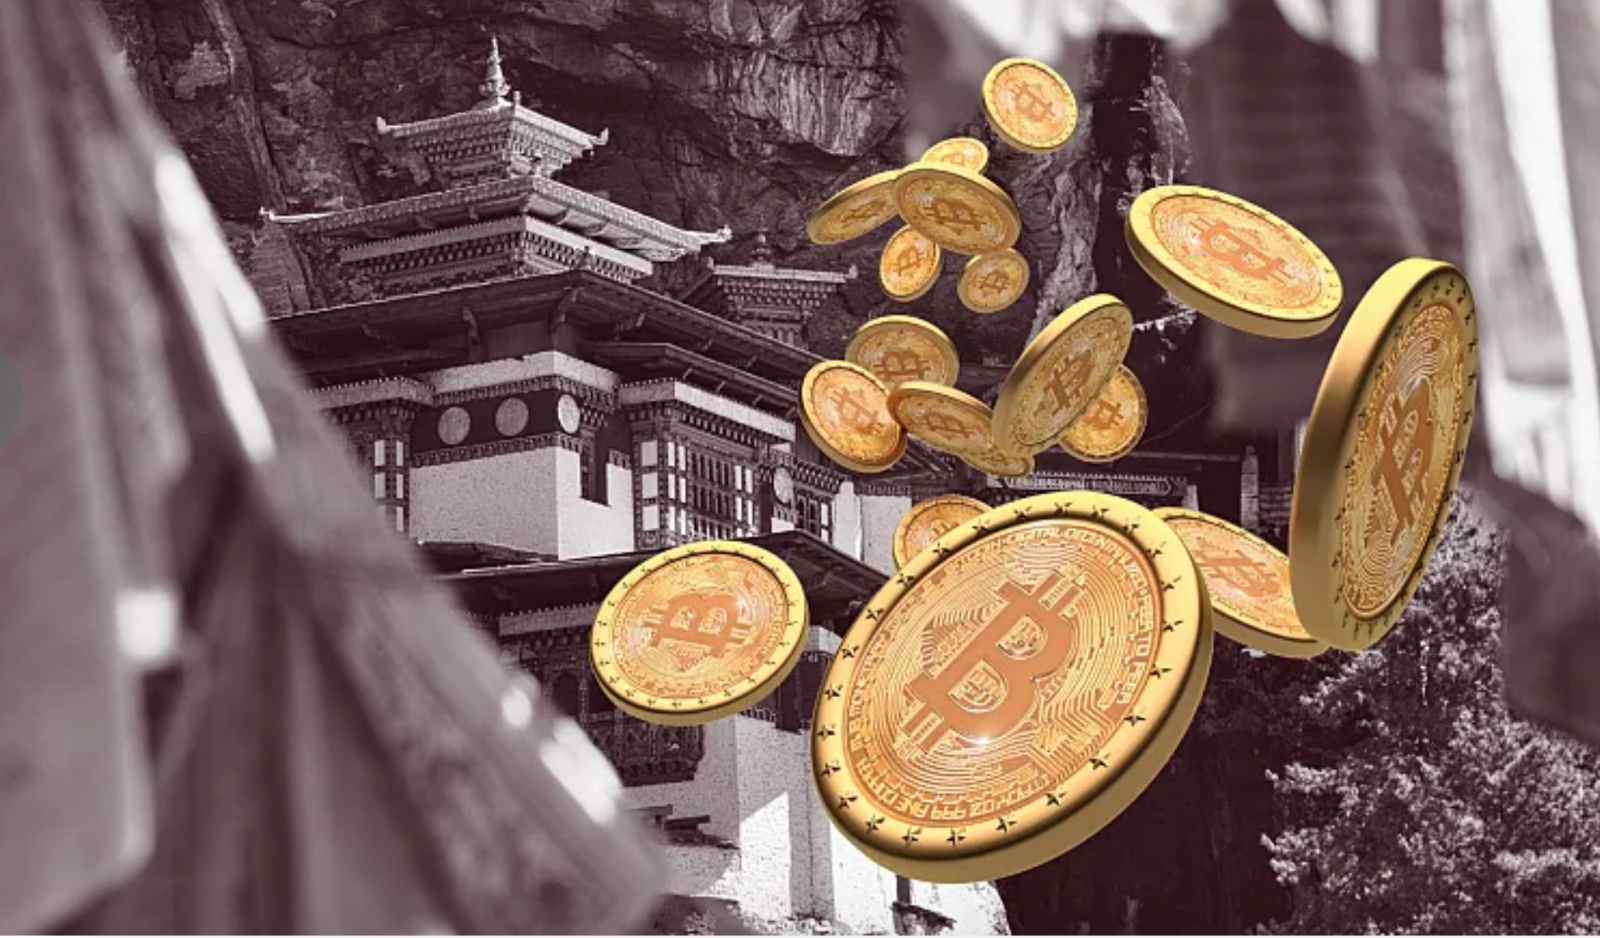 Giống như các quốc gia khác đang nghiên cứu về tiền điện tử, nhiều yếu tố kinh tế đã giải thích cho sự quan tâm của Bhutan đối với Bitcoin